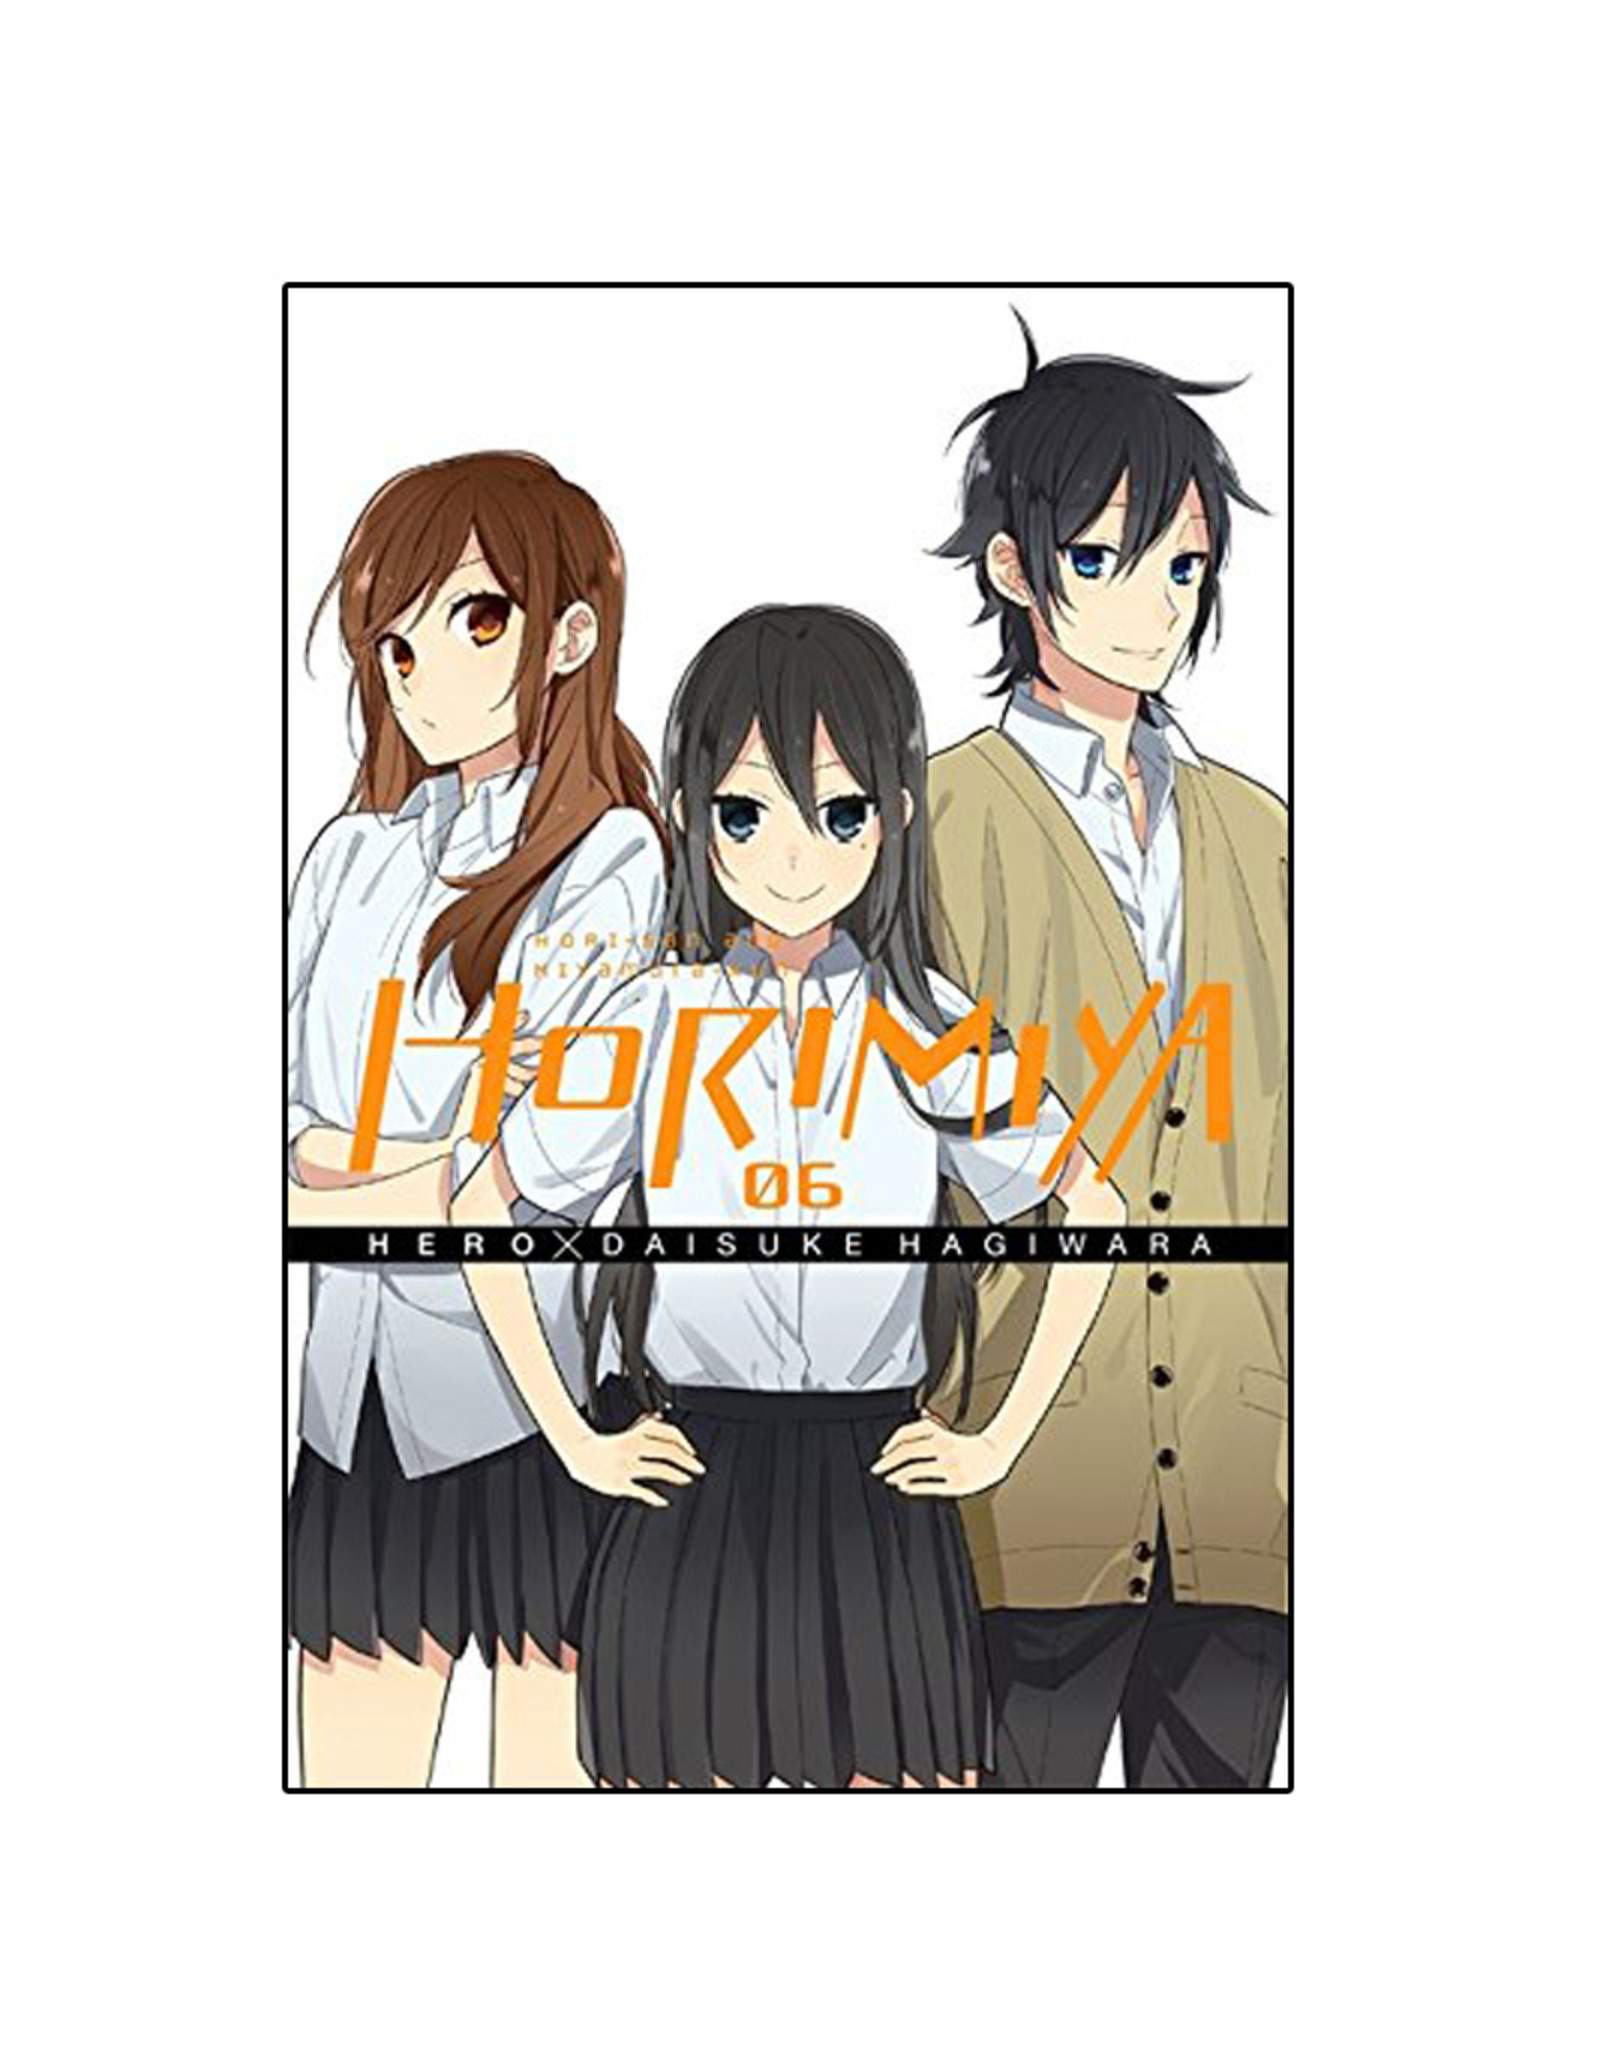 Yen Press Horimiya Volume 06